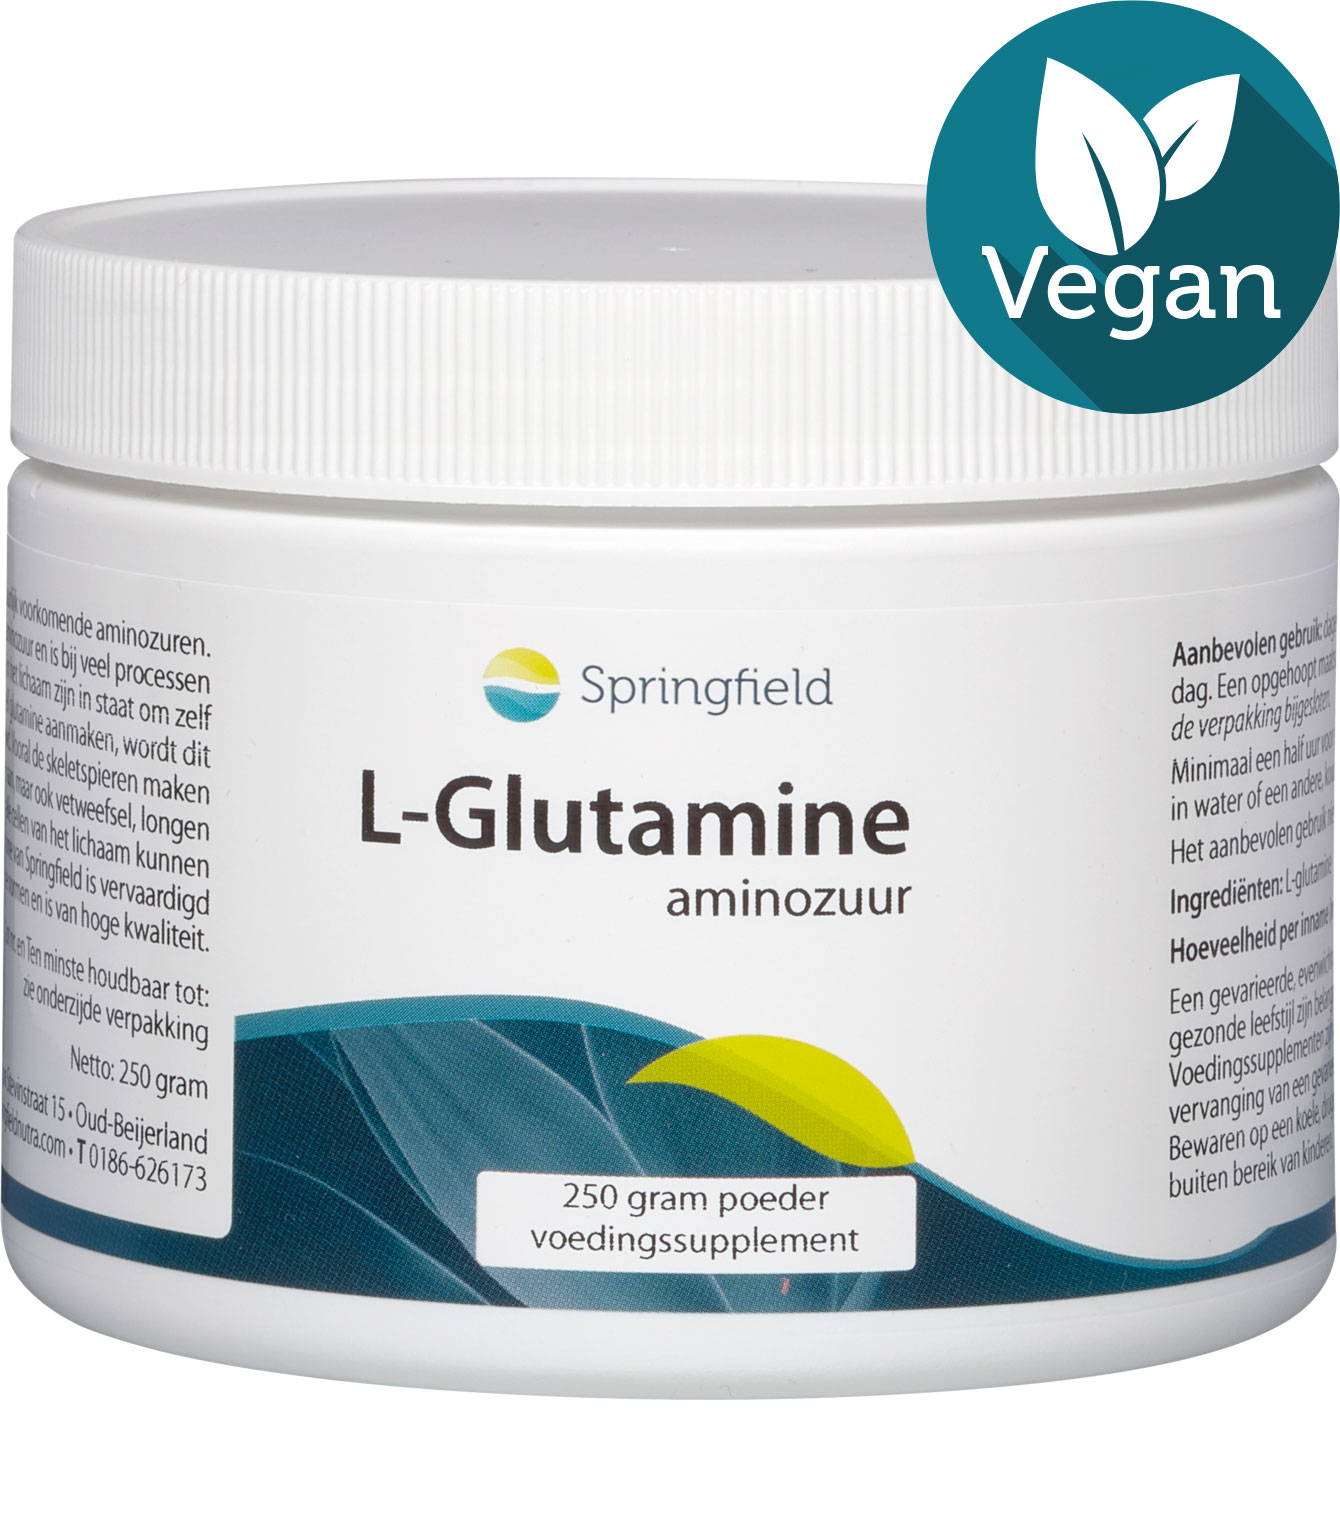 L-Glutamine - aminozuur